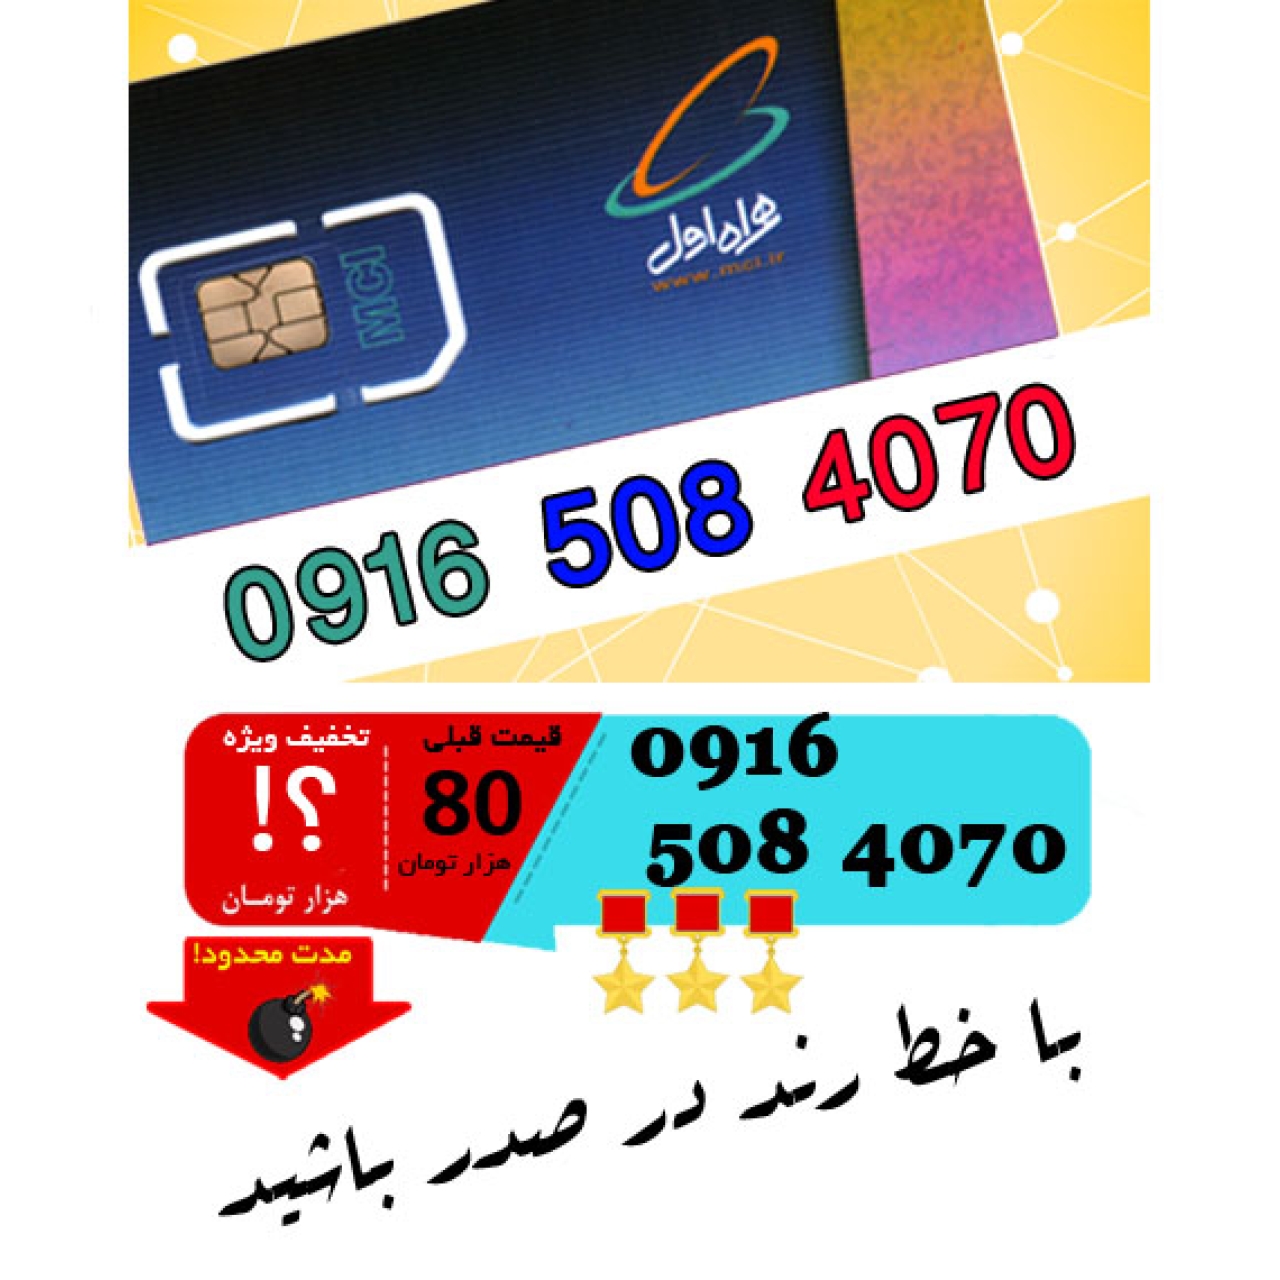 سیم کارت اعتباری رند همراه اول 09165084070